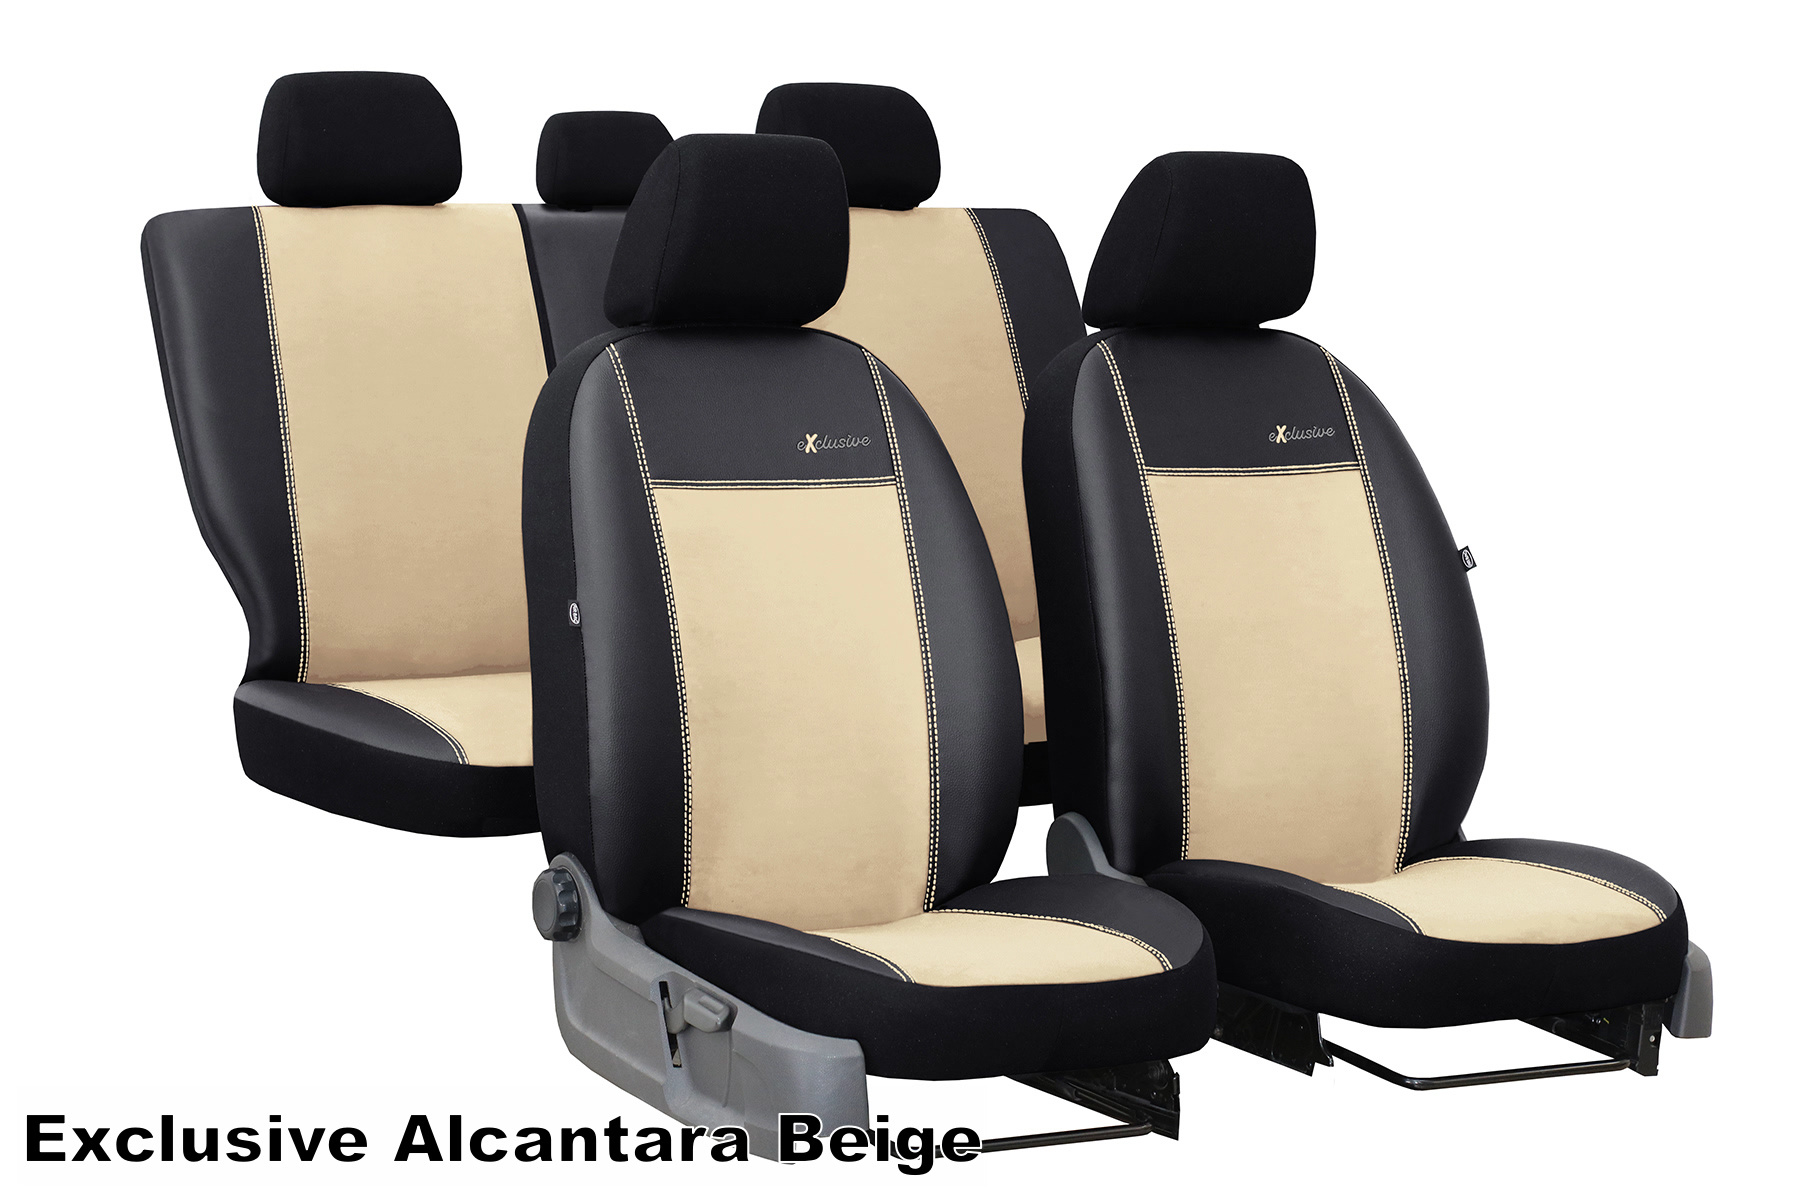 Maßgefertigter Sitzbezug Exclusive für Citroen C1 C2 C3 C4 Cactus - Maluch  Premium Autozubehör